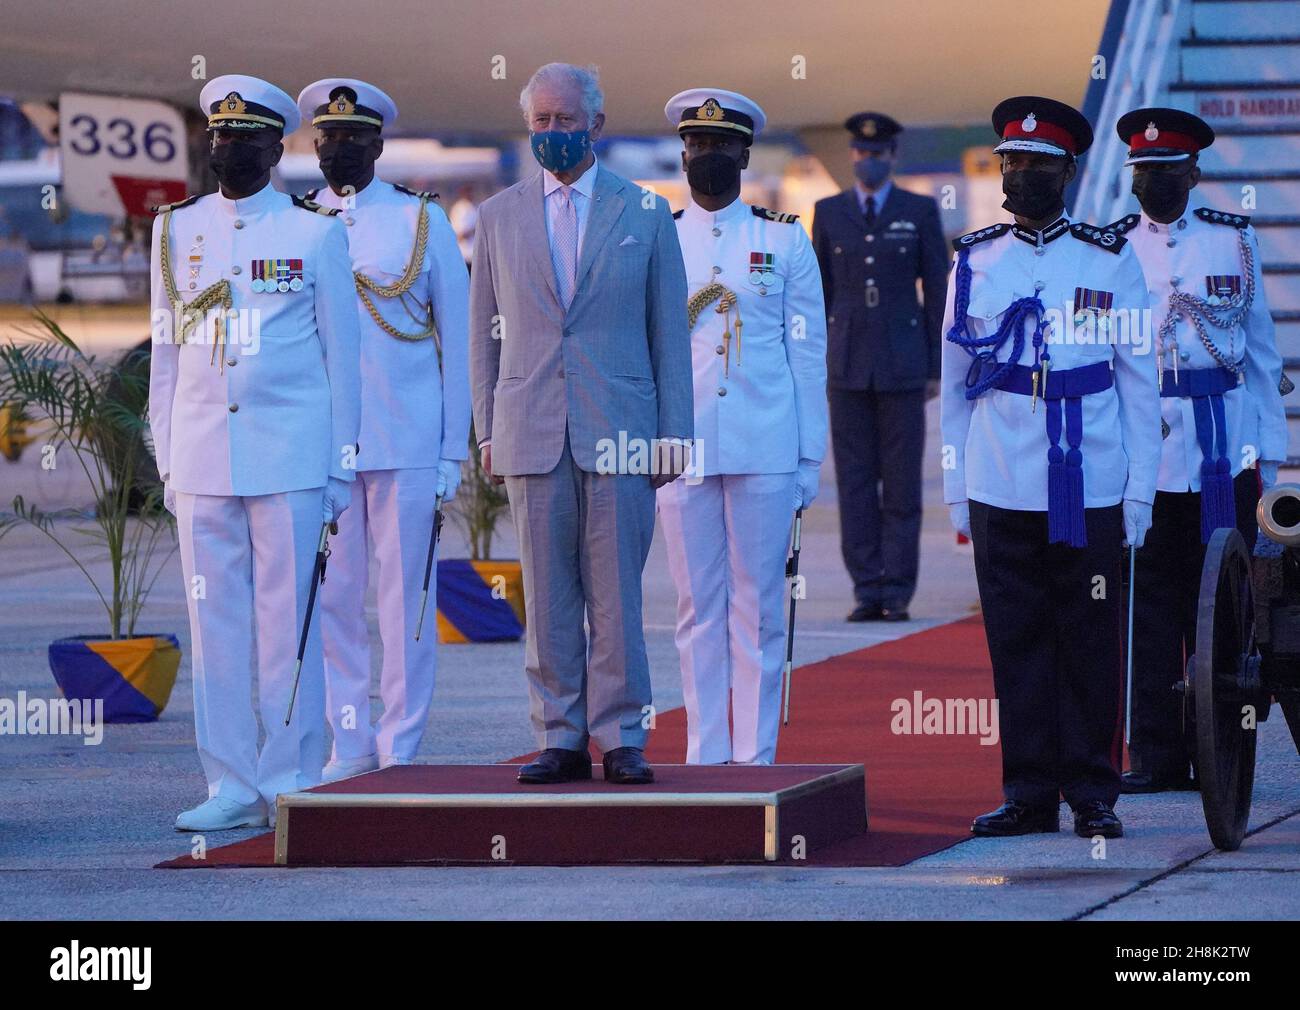 Der Prinz von Wales auf dem internationalen Flughafen Grantley Adams in Barbados, bevor er nach einer Zeremonie anlässlich des Übergangs des Landes zu einer republik innerhalb des Commonwealth nach Großbritannien aufbrechen wird. Bilddatum: Dienstag, 30. November 2021. Stockfoto